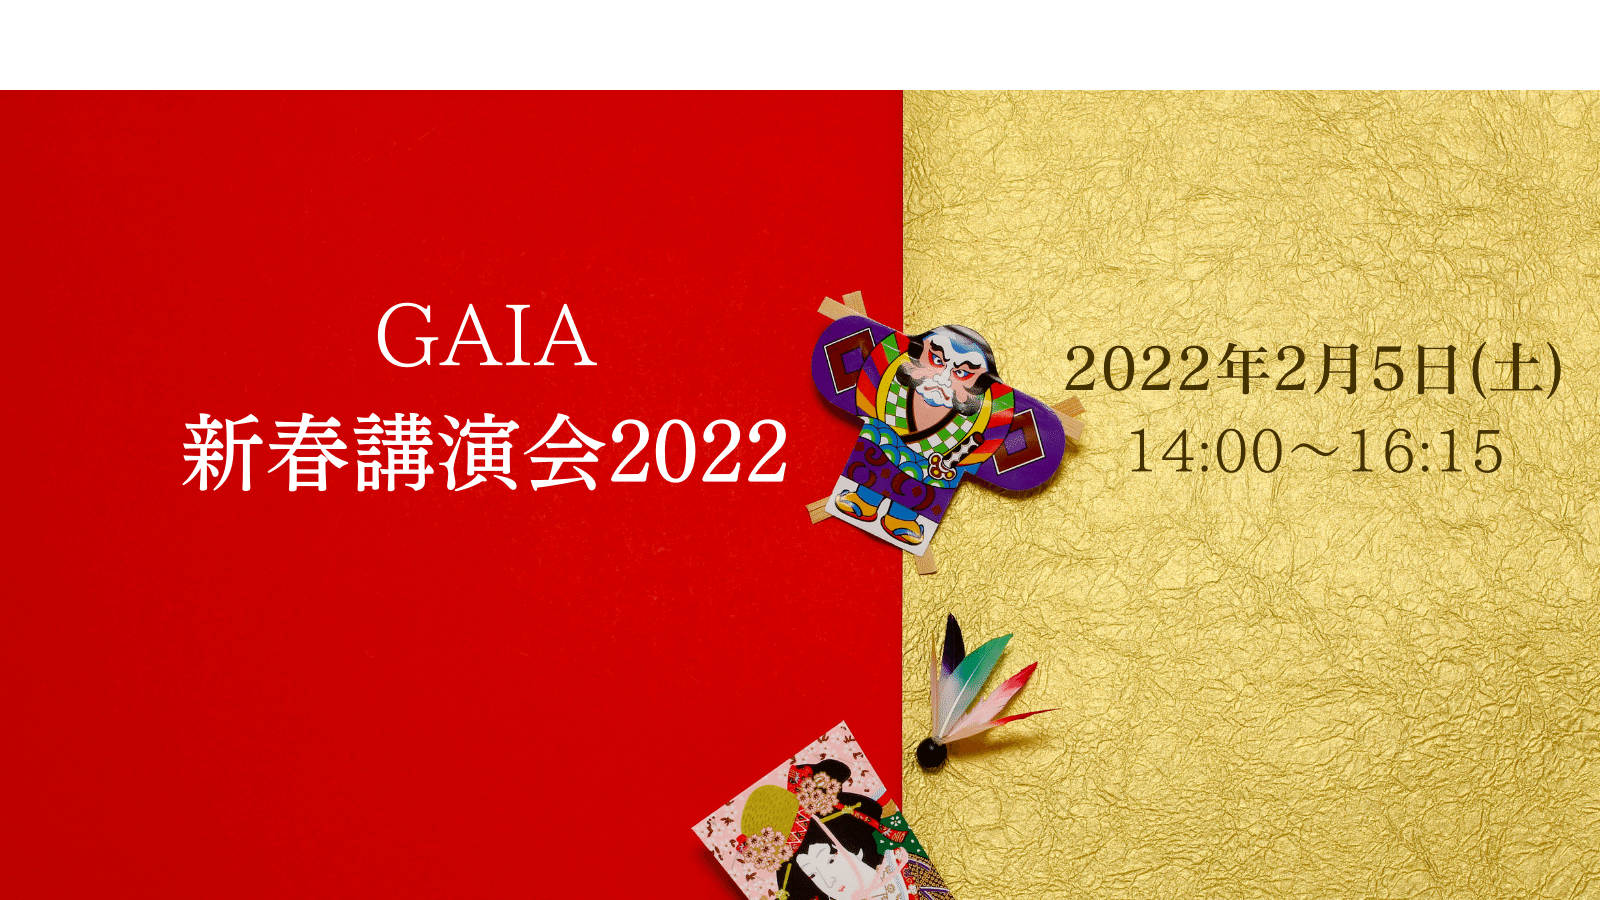 GAIA新春講演会2022のイメージ